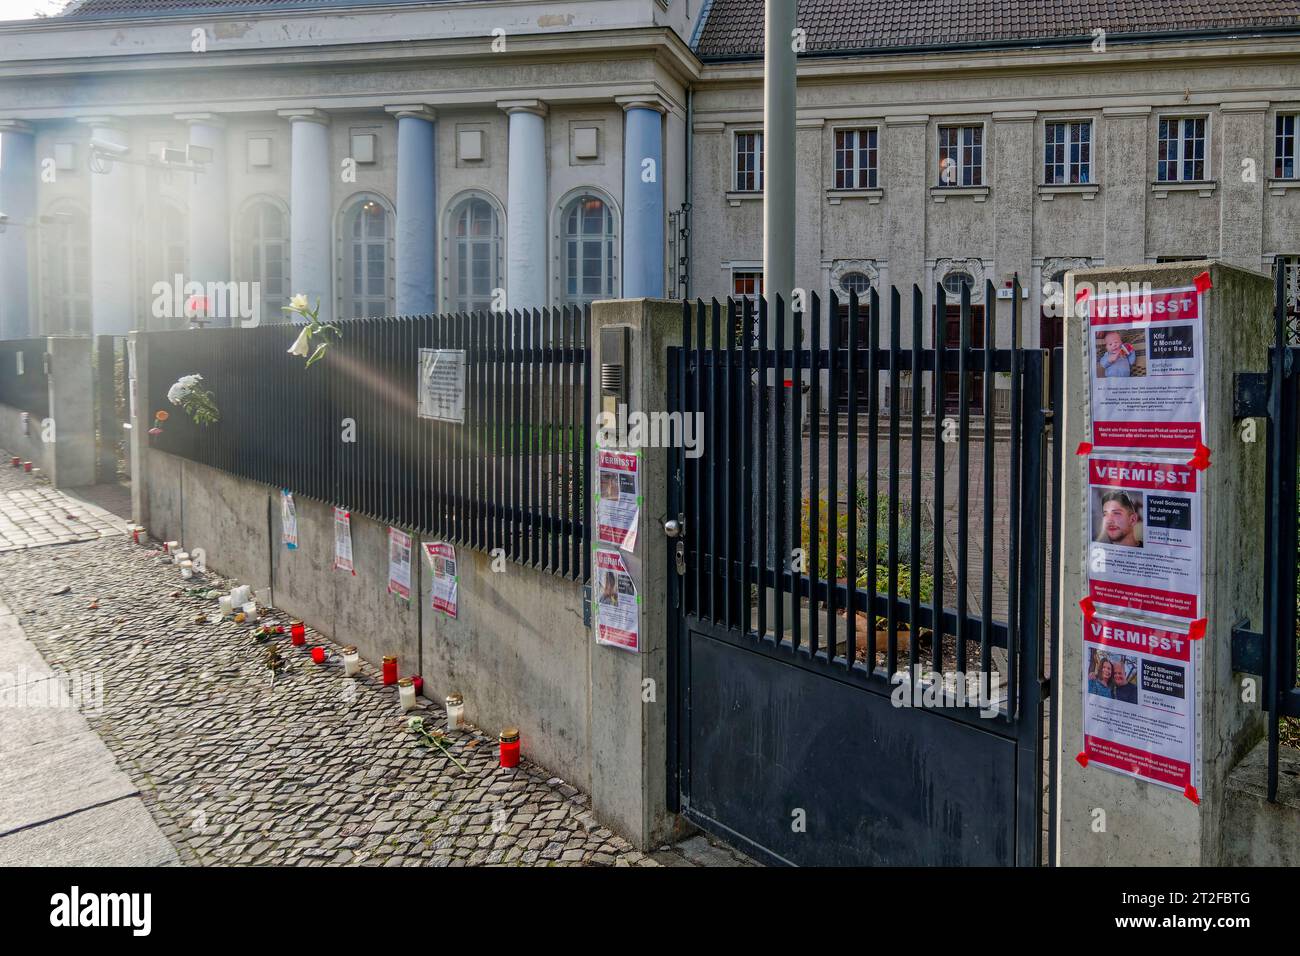 Vermisstensuche durch Hamas verschleppter Geiseln vor jüdischer Synagoge Fraenkelufer, Suchplakate, Berlin-Kreuzberg, Stock Photo